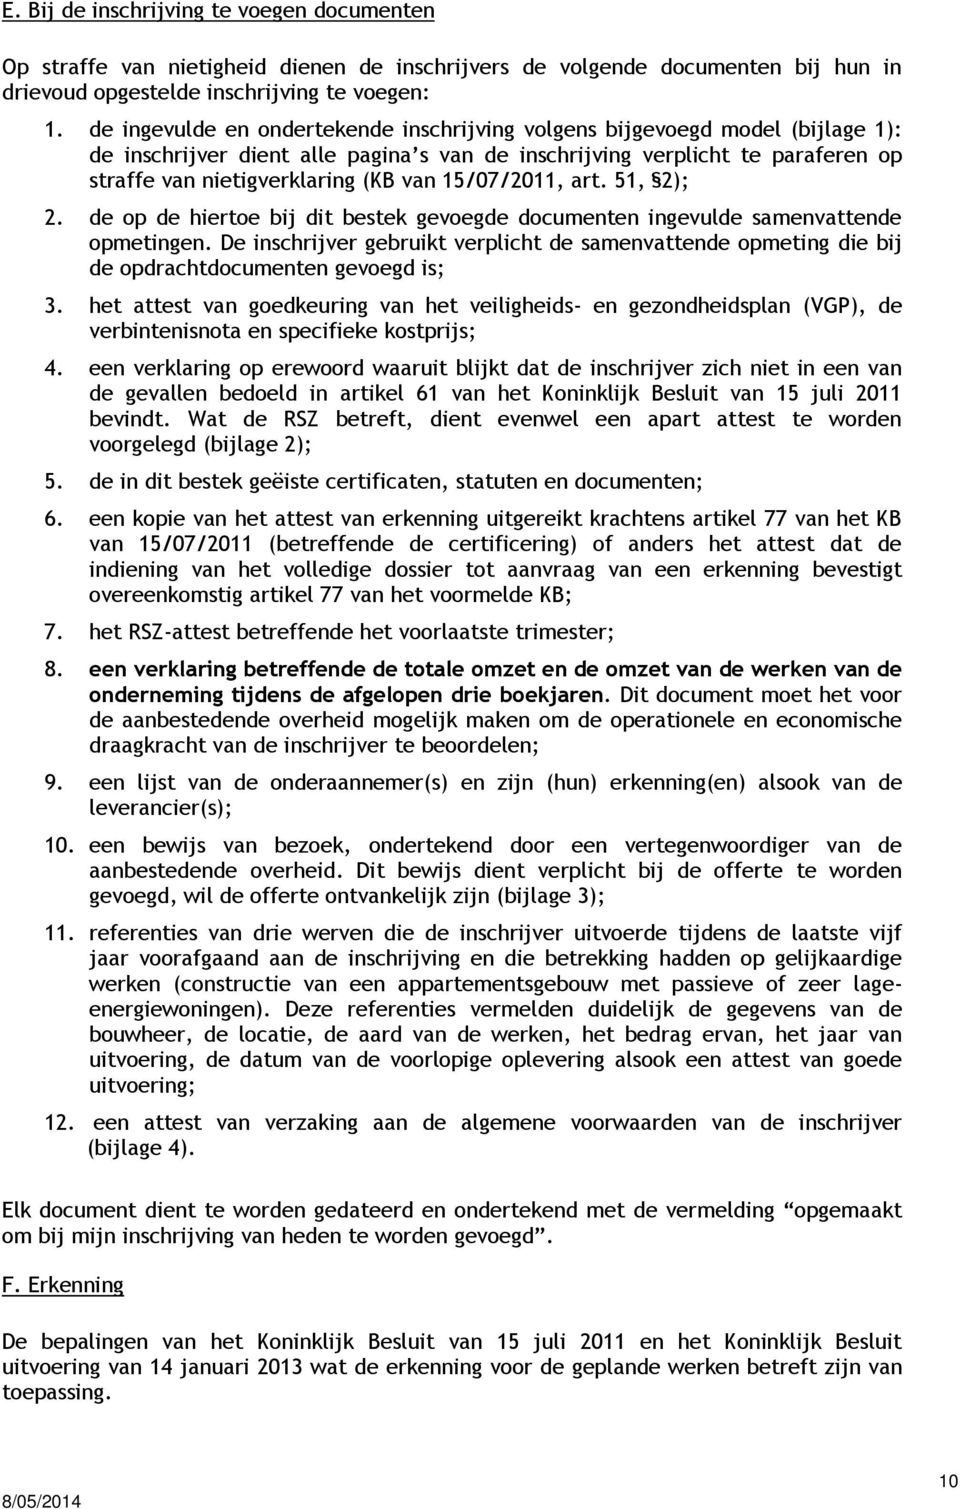 15/07/2011, art. 51, 2); 2. de op de hiertoe bij dit bestek gevoegde documenten ingevulde samenvattende opmetingen.